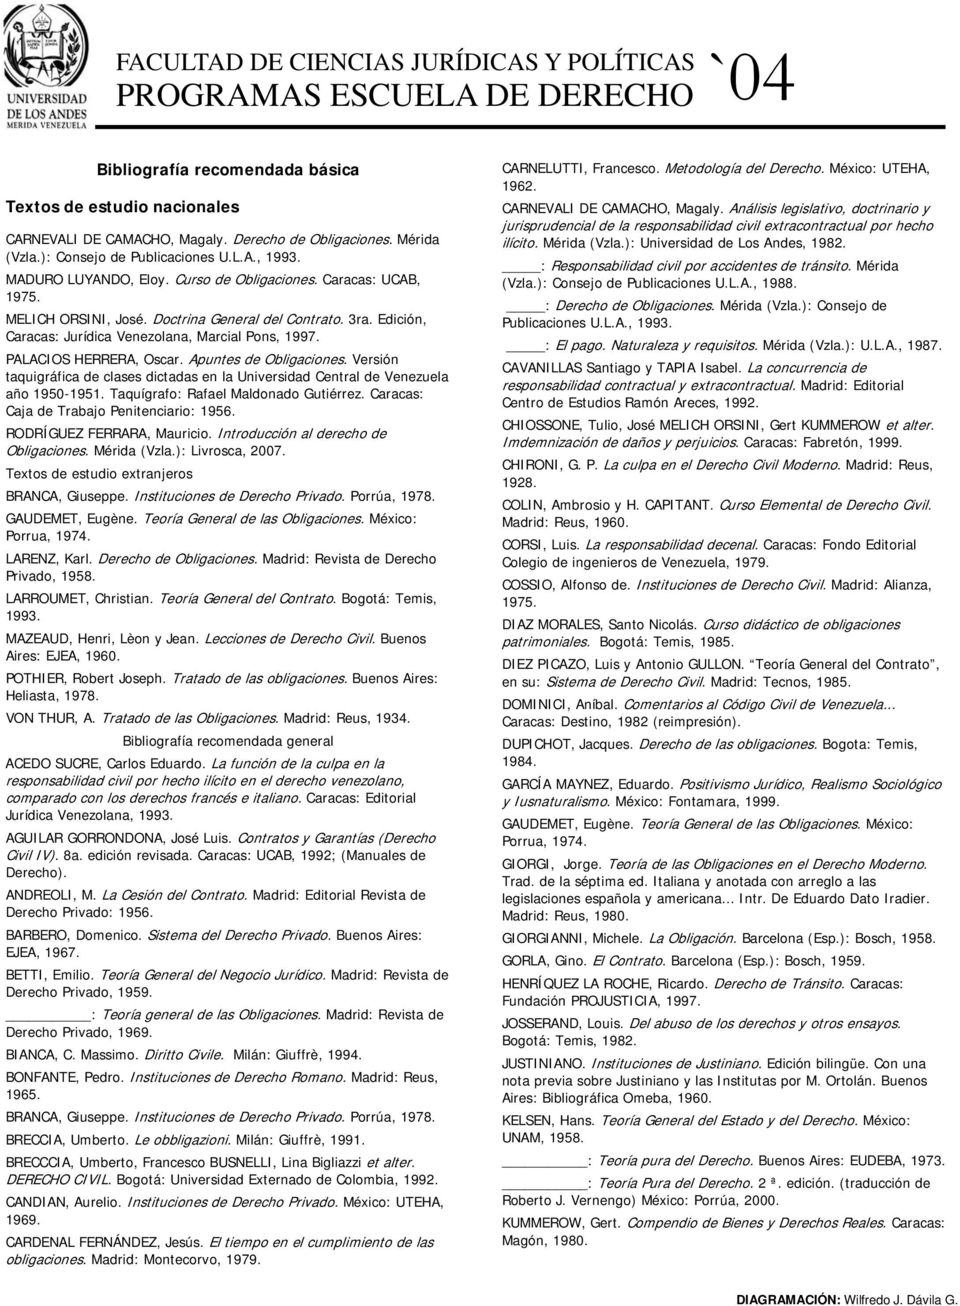 Apuntes de Obligaciones. Versión taquigráfica de clases dictadas en la Universidad Central de Venezuela año 1950-1951. Taquígrafo: Rafael Maldonado Gutiérrez.